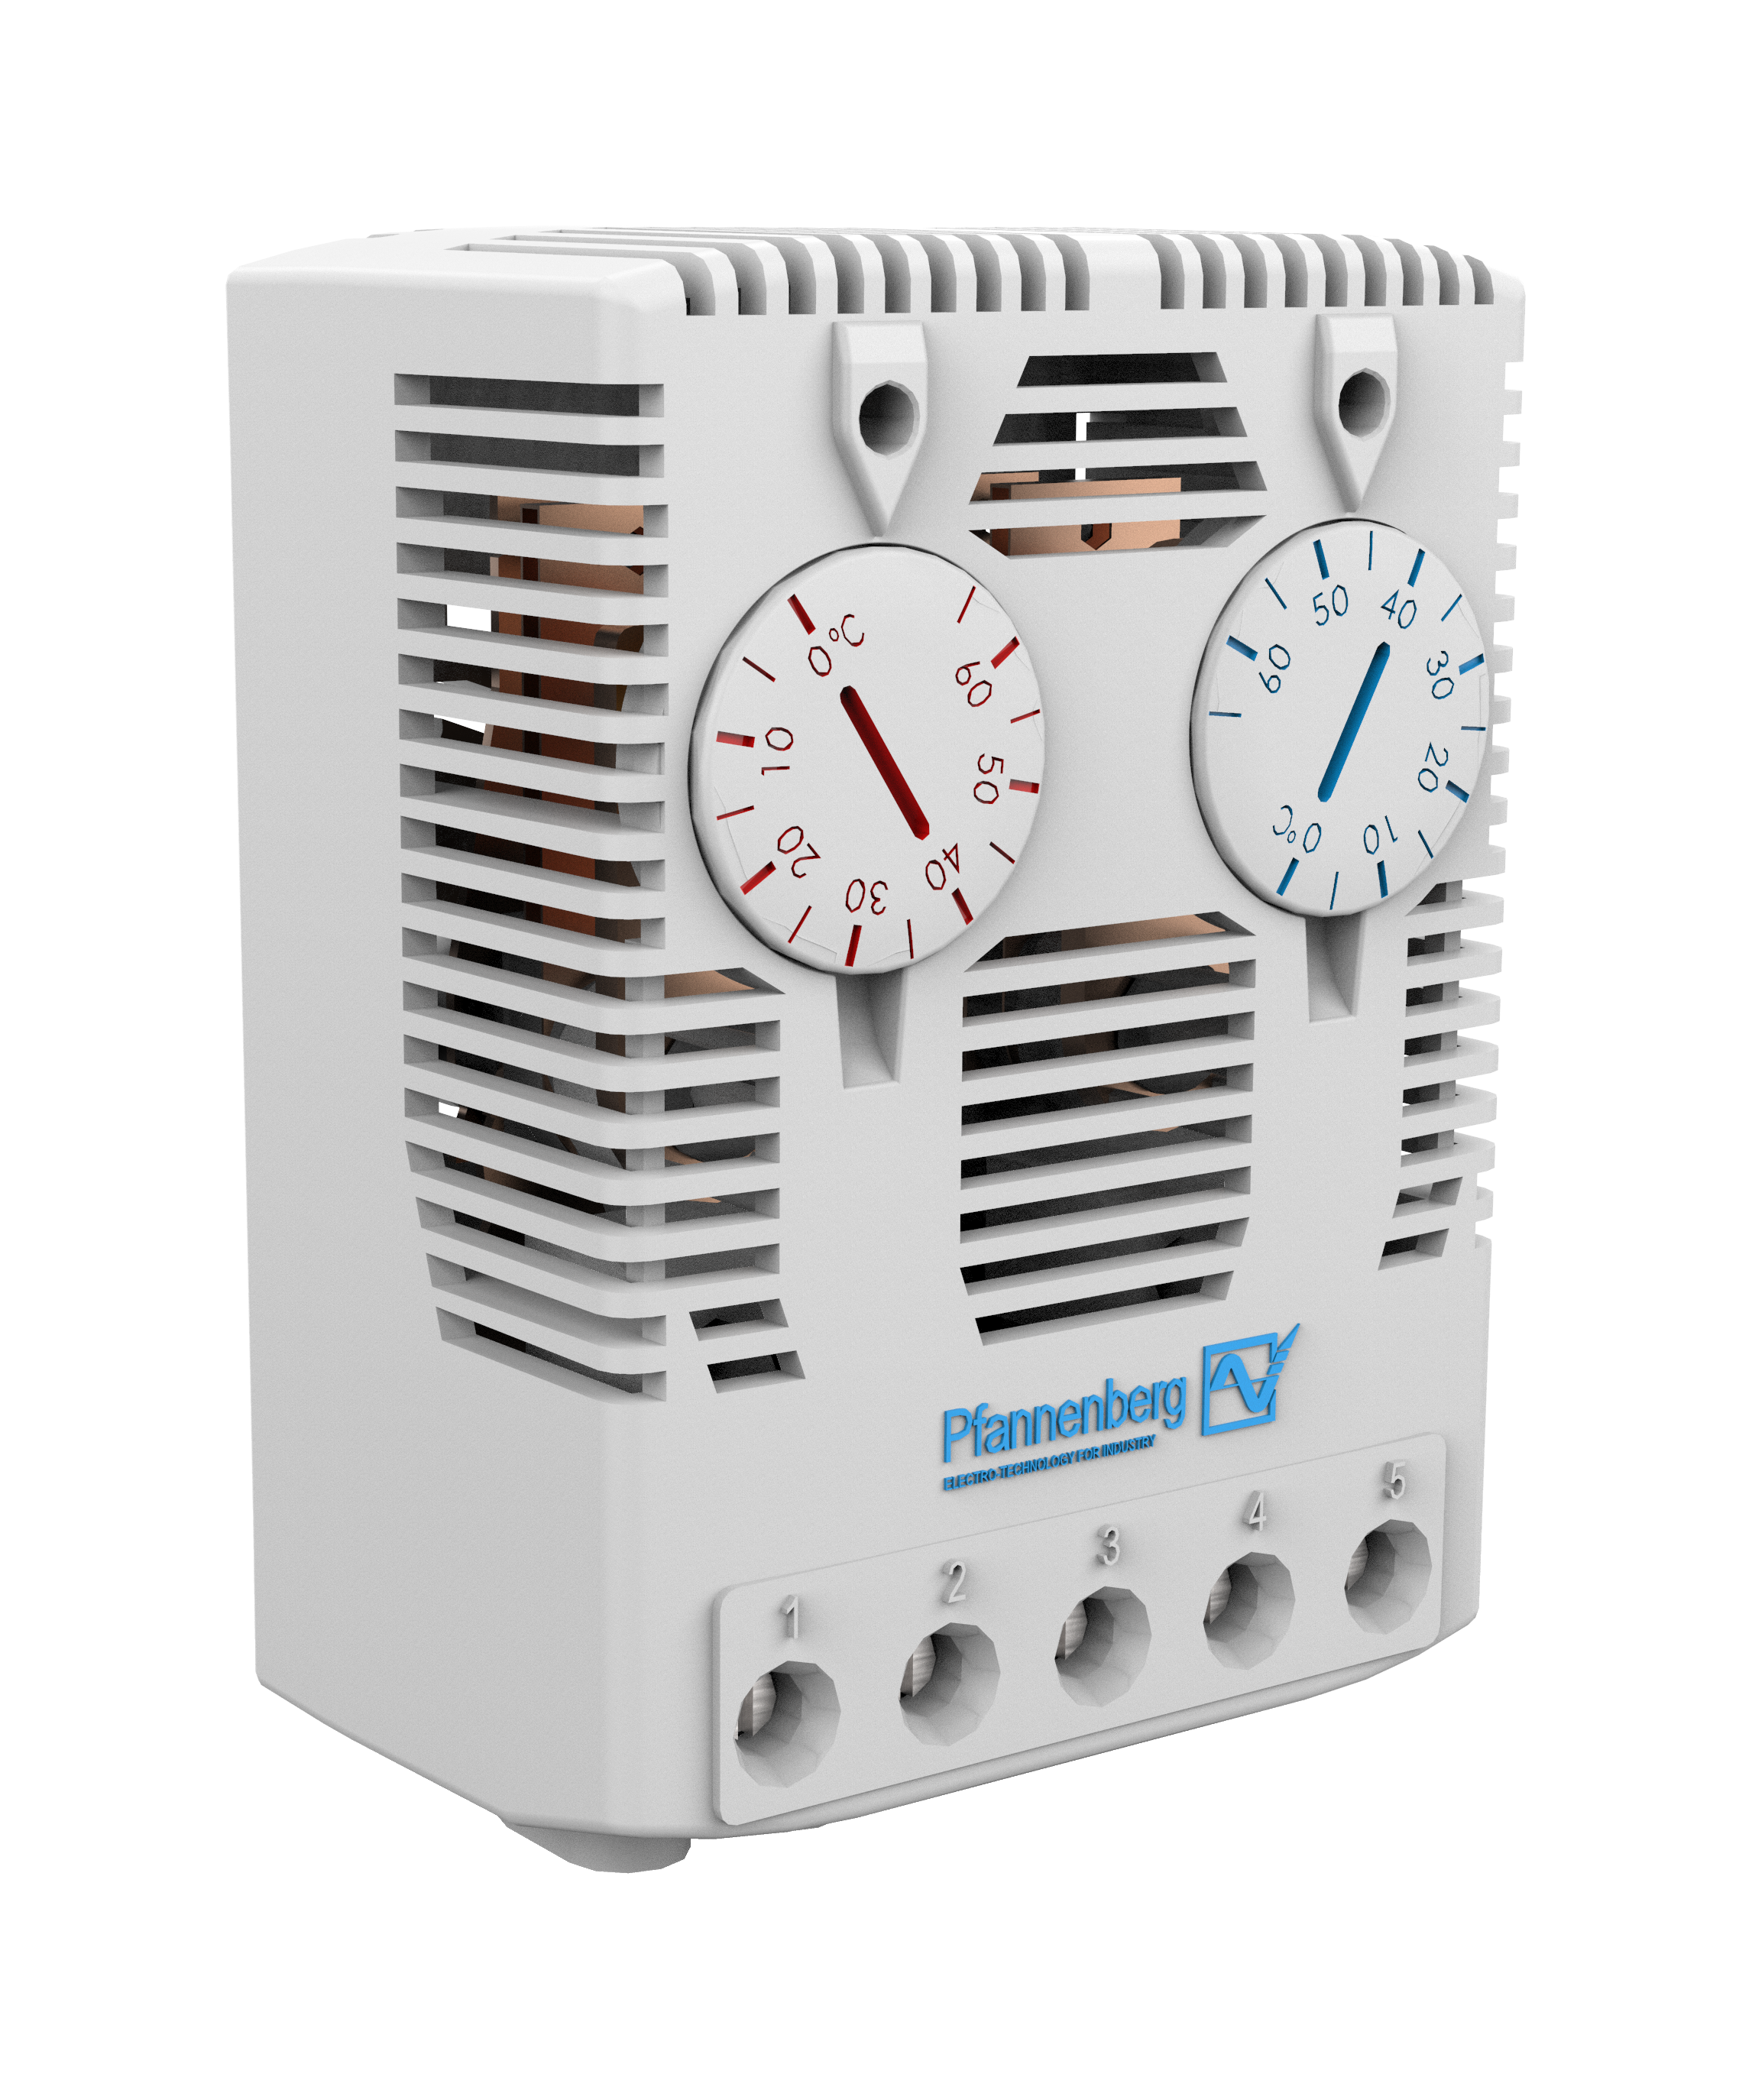 Thermostat FLZ541 Öffner/Schließer,0-60C,